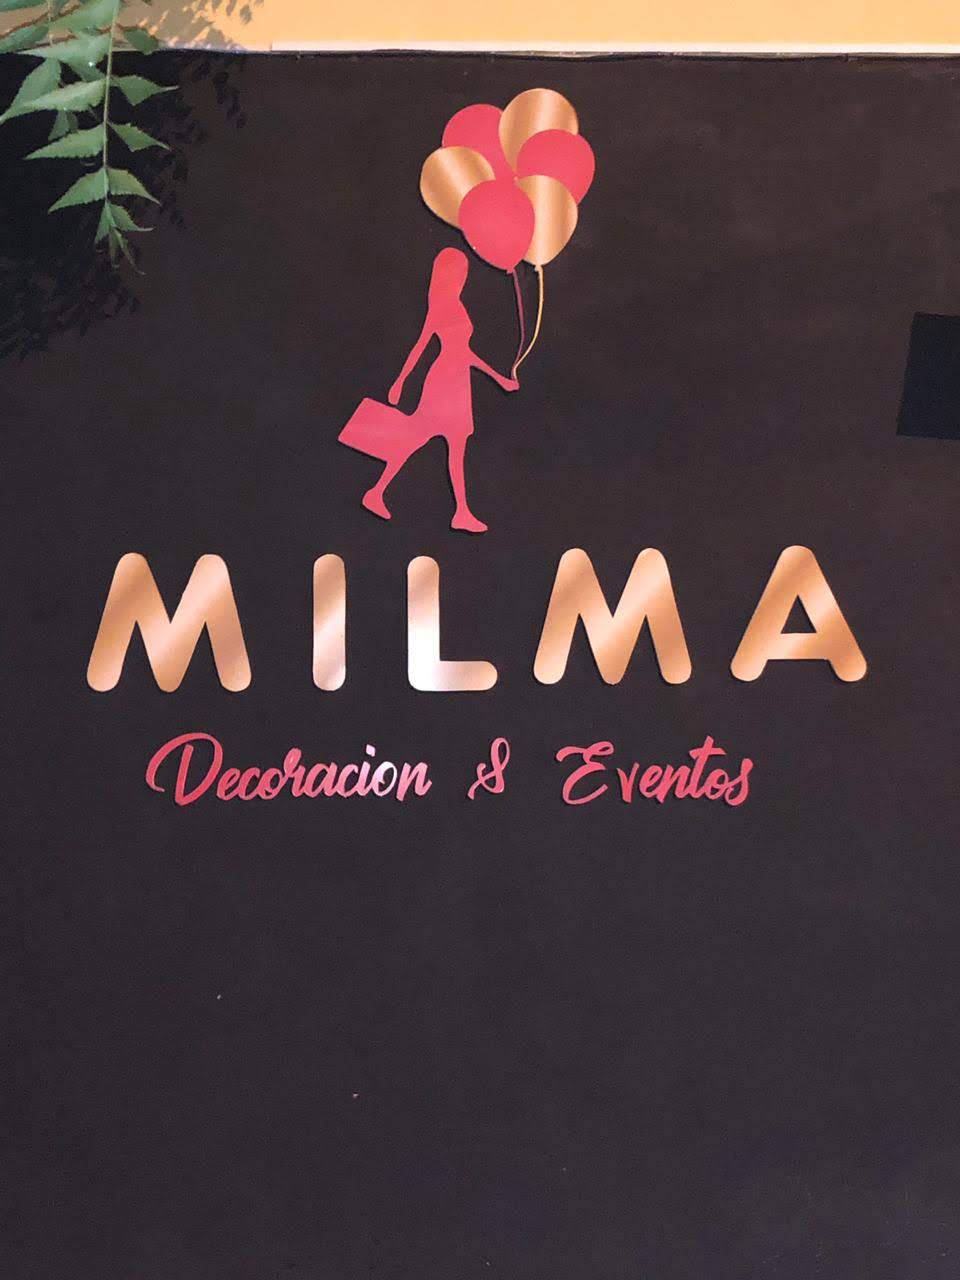 Milma Decoracion & Eventos